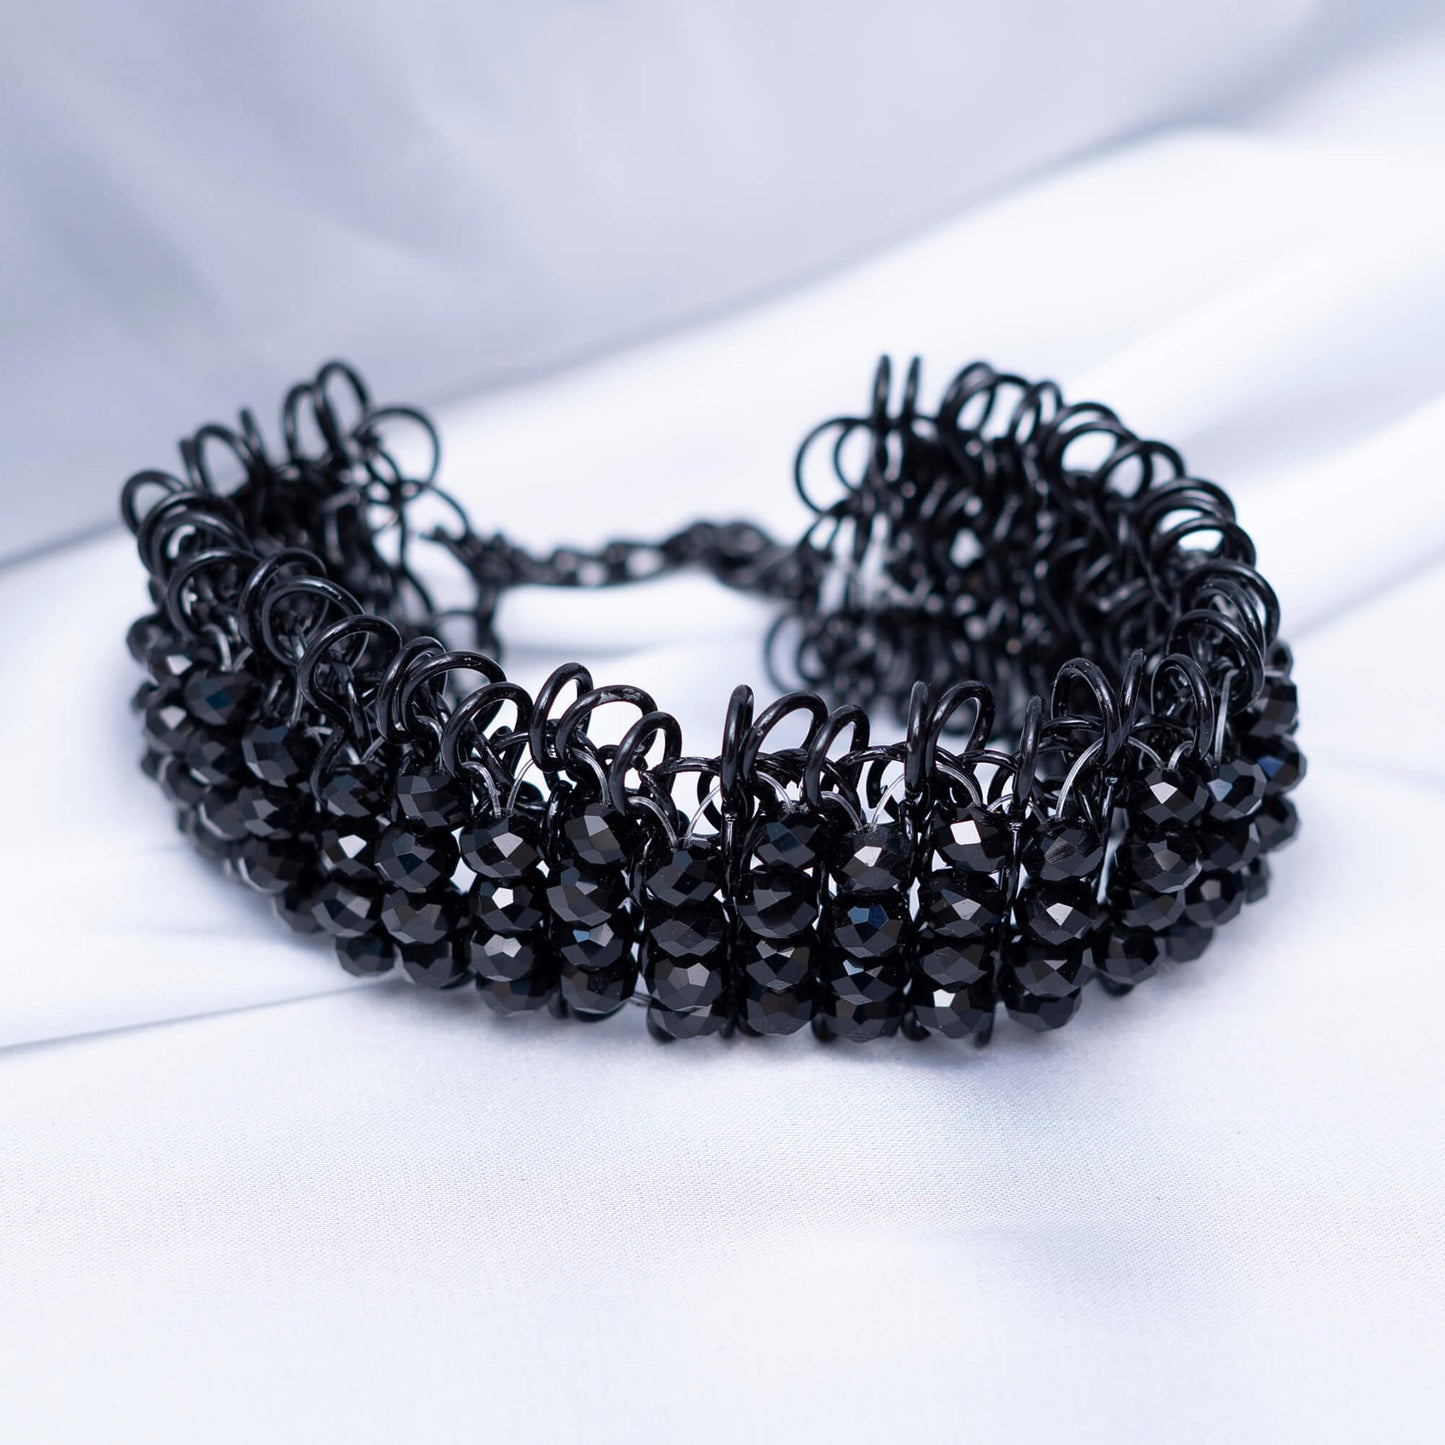 Black Pearls Bracelet